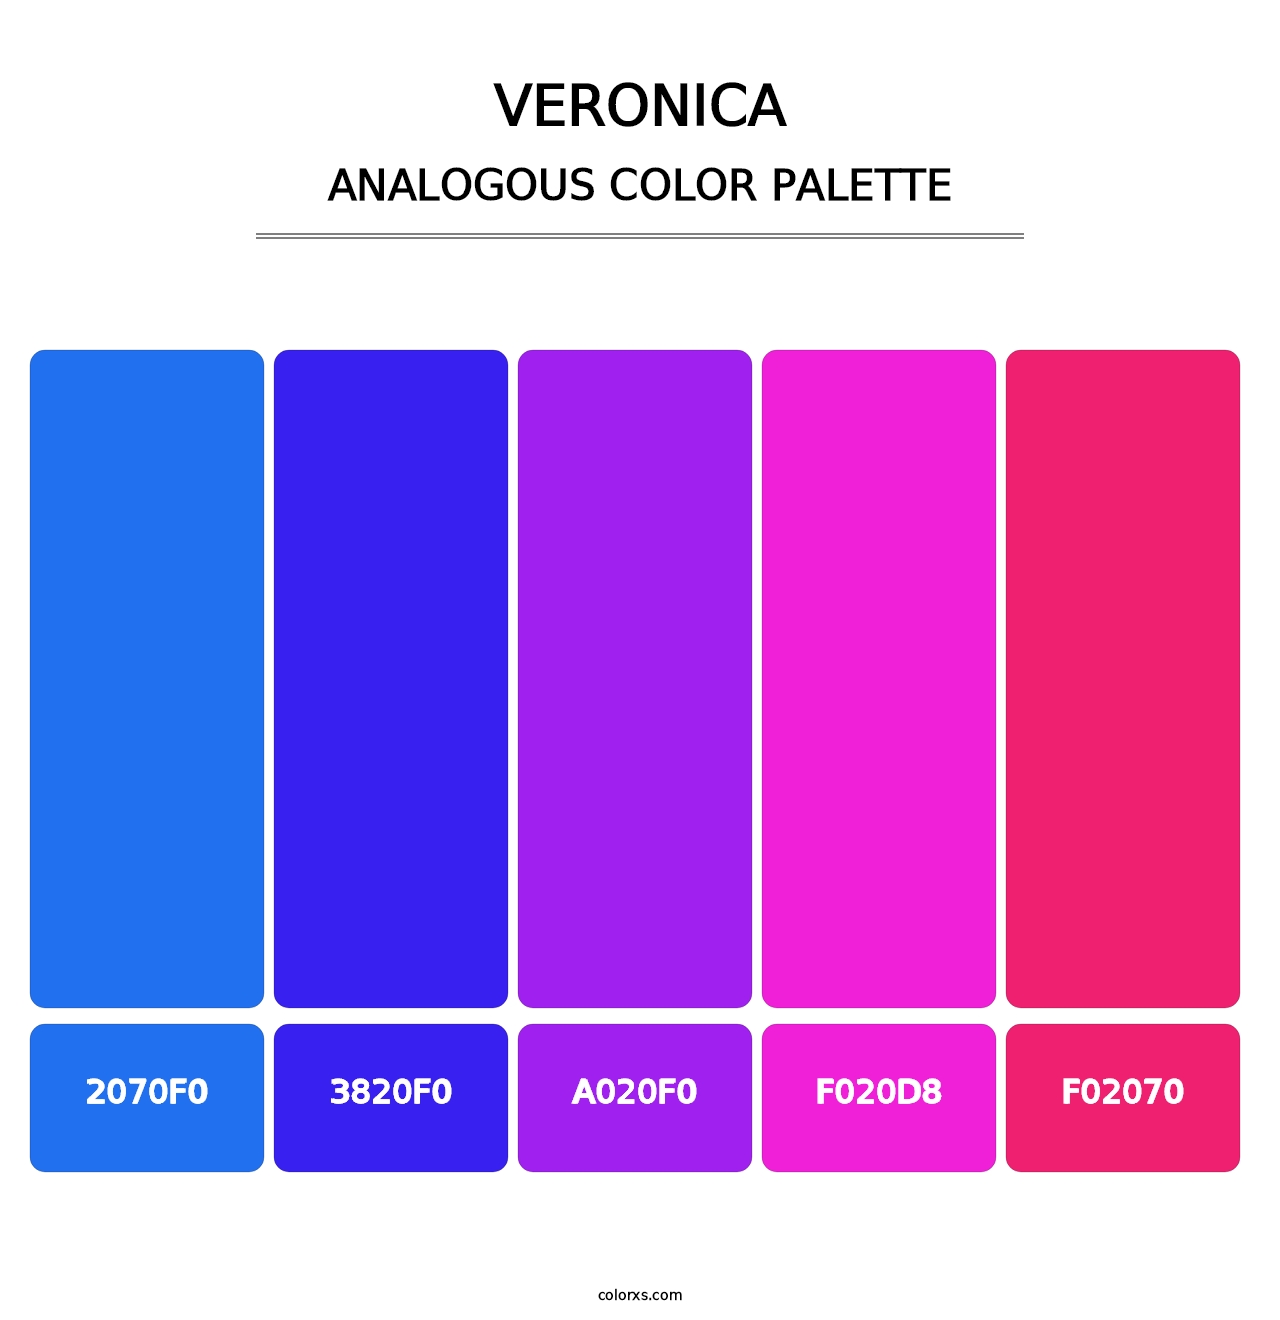 Veronica - Analogous Color Palette